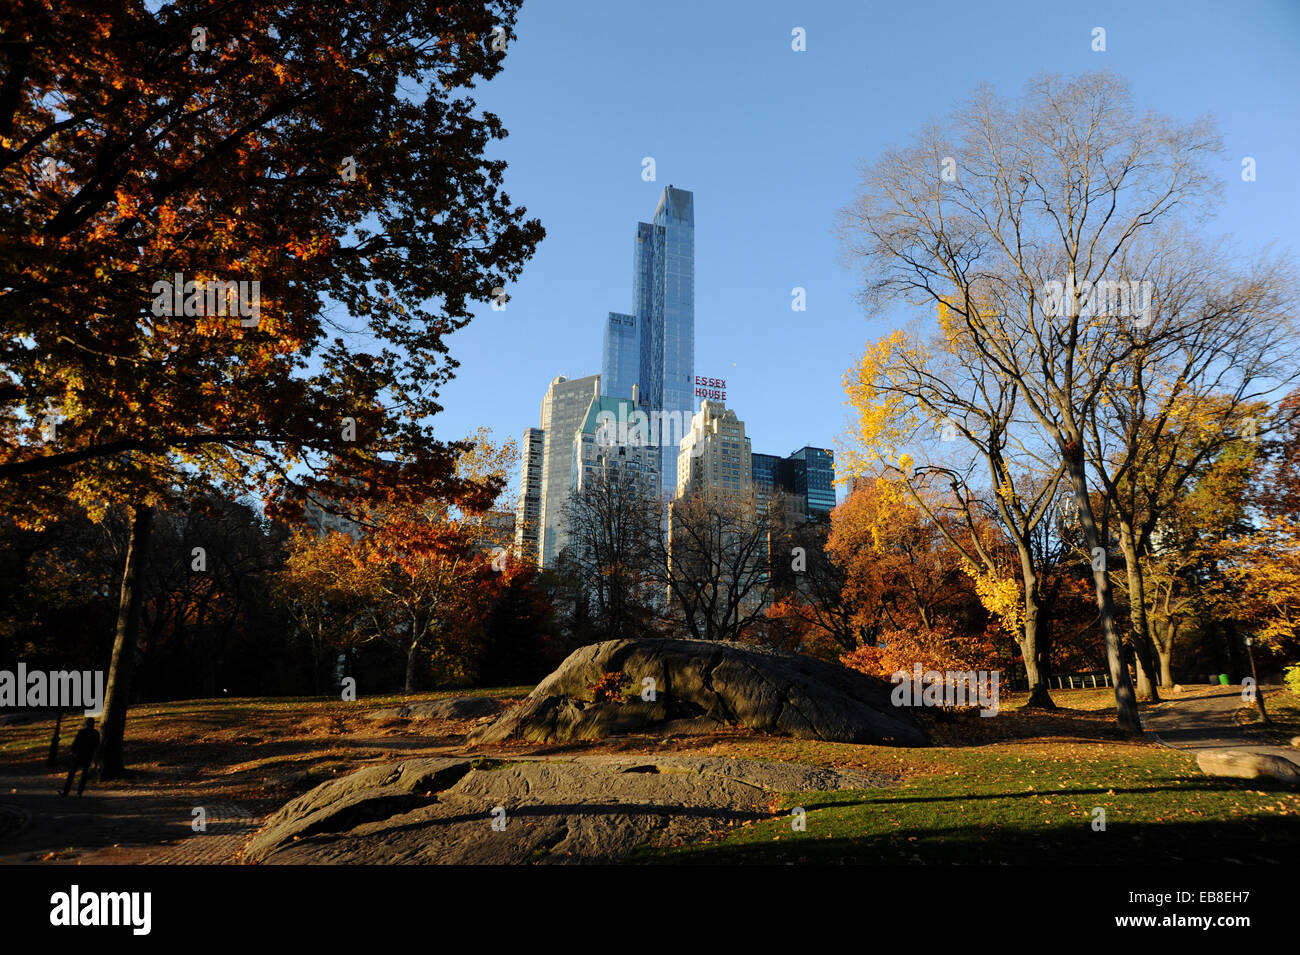 JW Marriott Essex House hotel overlooking Central Park Manhattan New York USA in Autumn sunshine Stock Photo